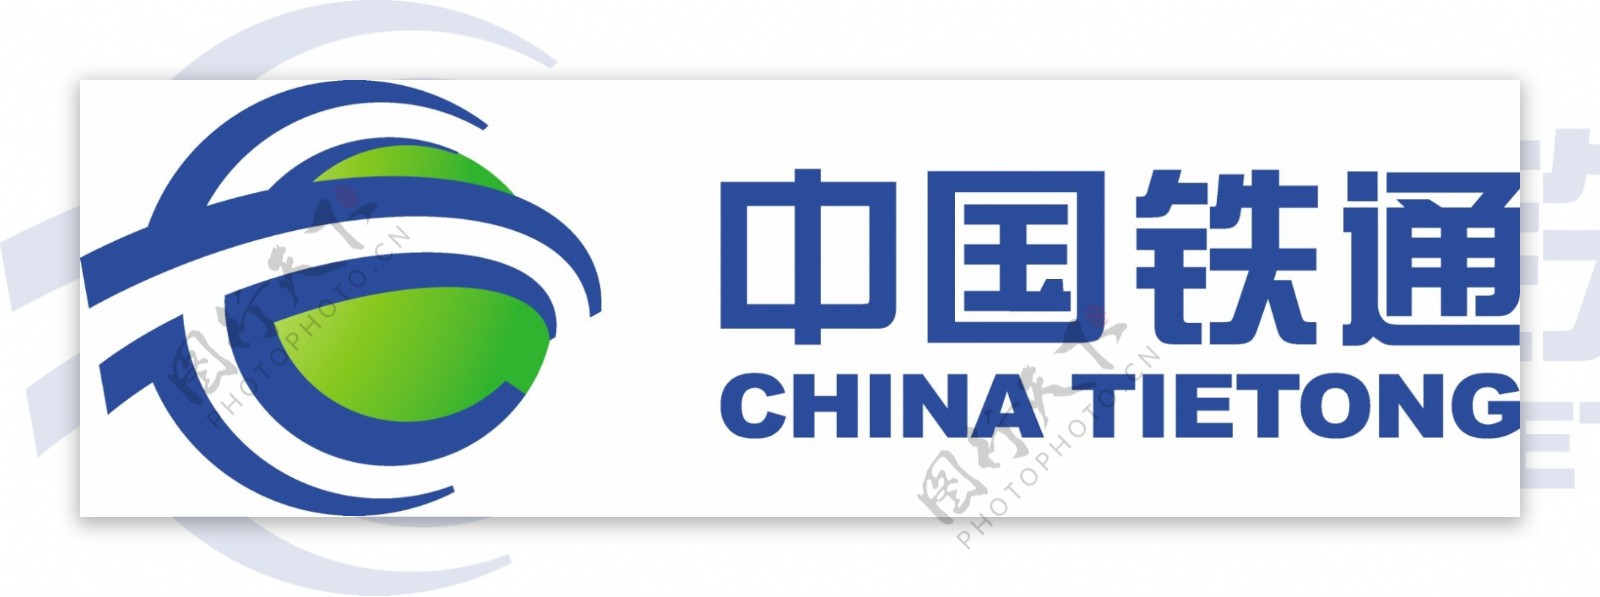 中国铁通标志